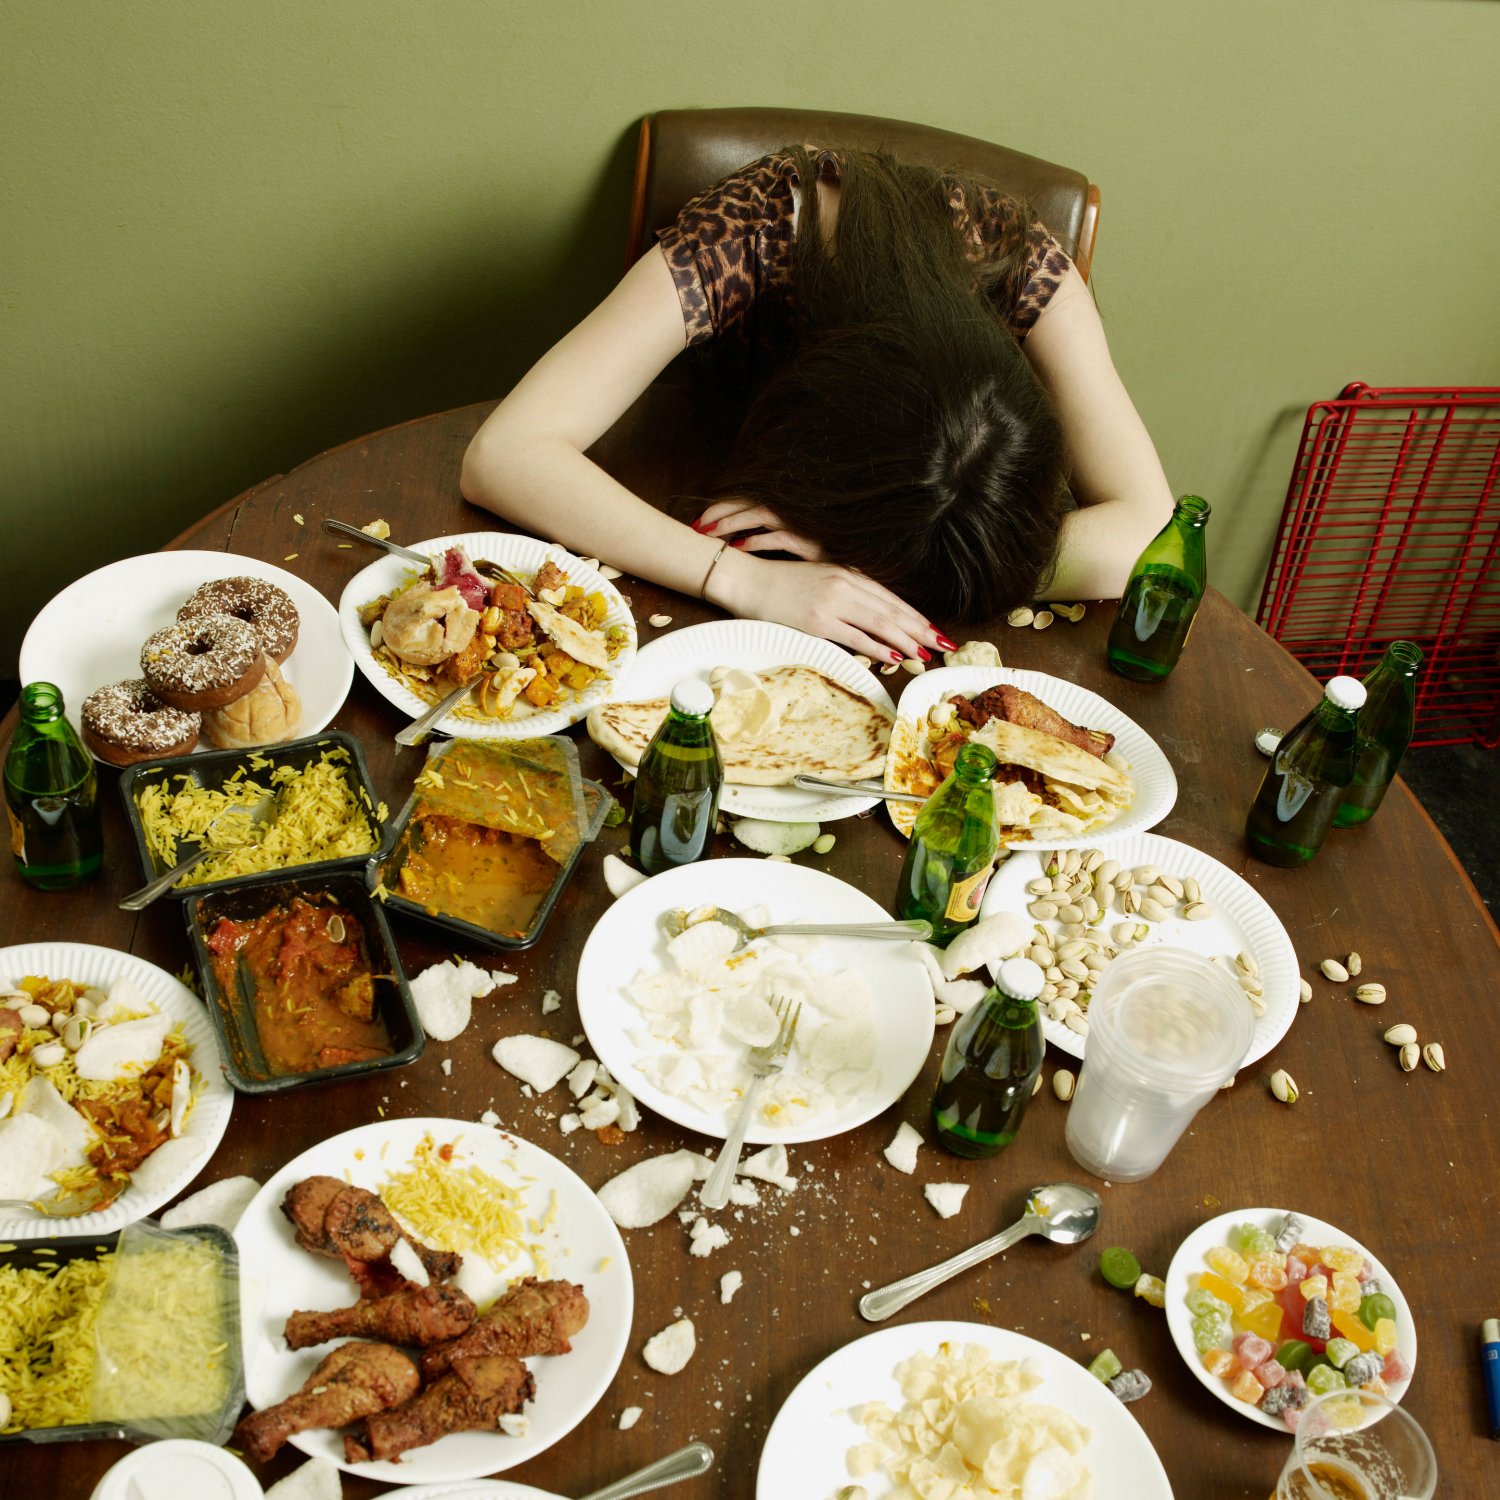 o que acontece com seu corpo na compulsão alimentar